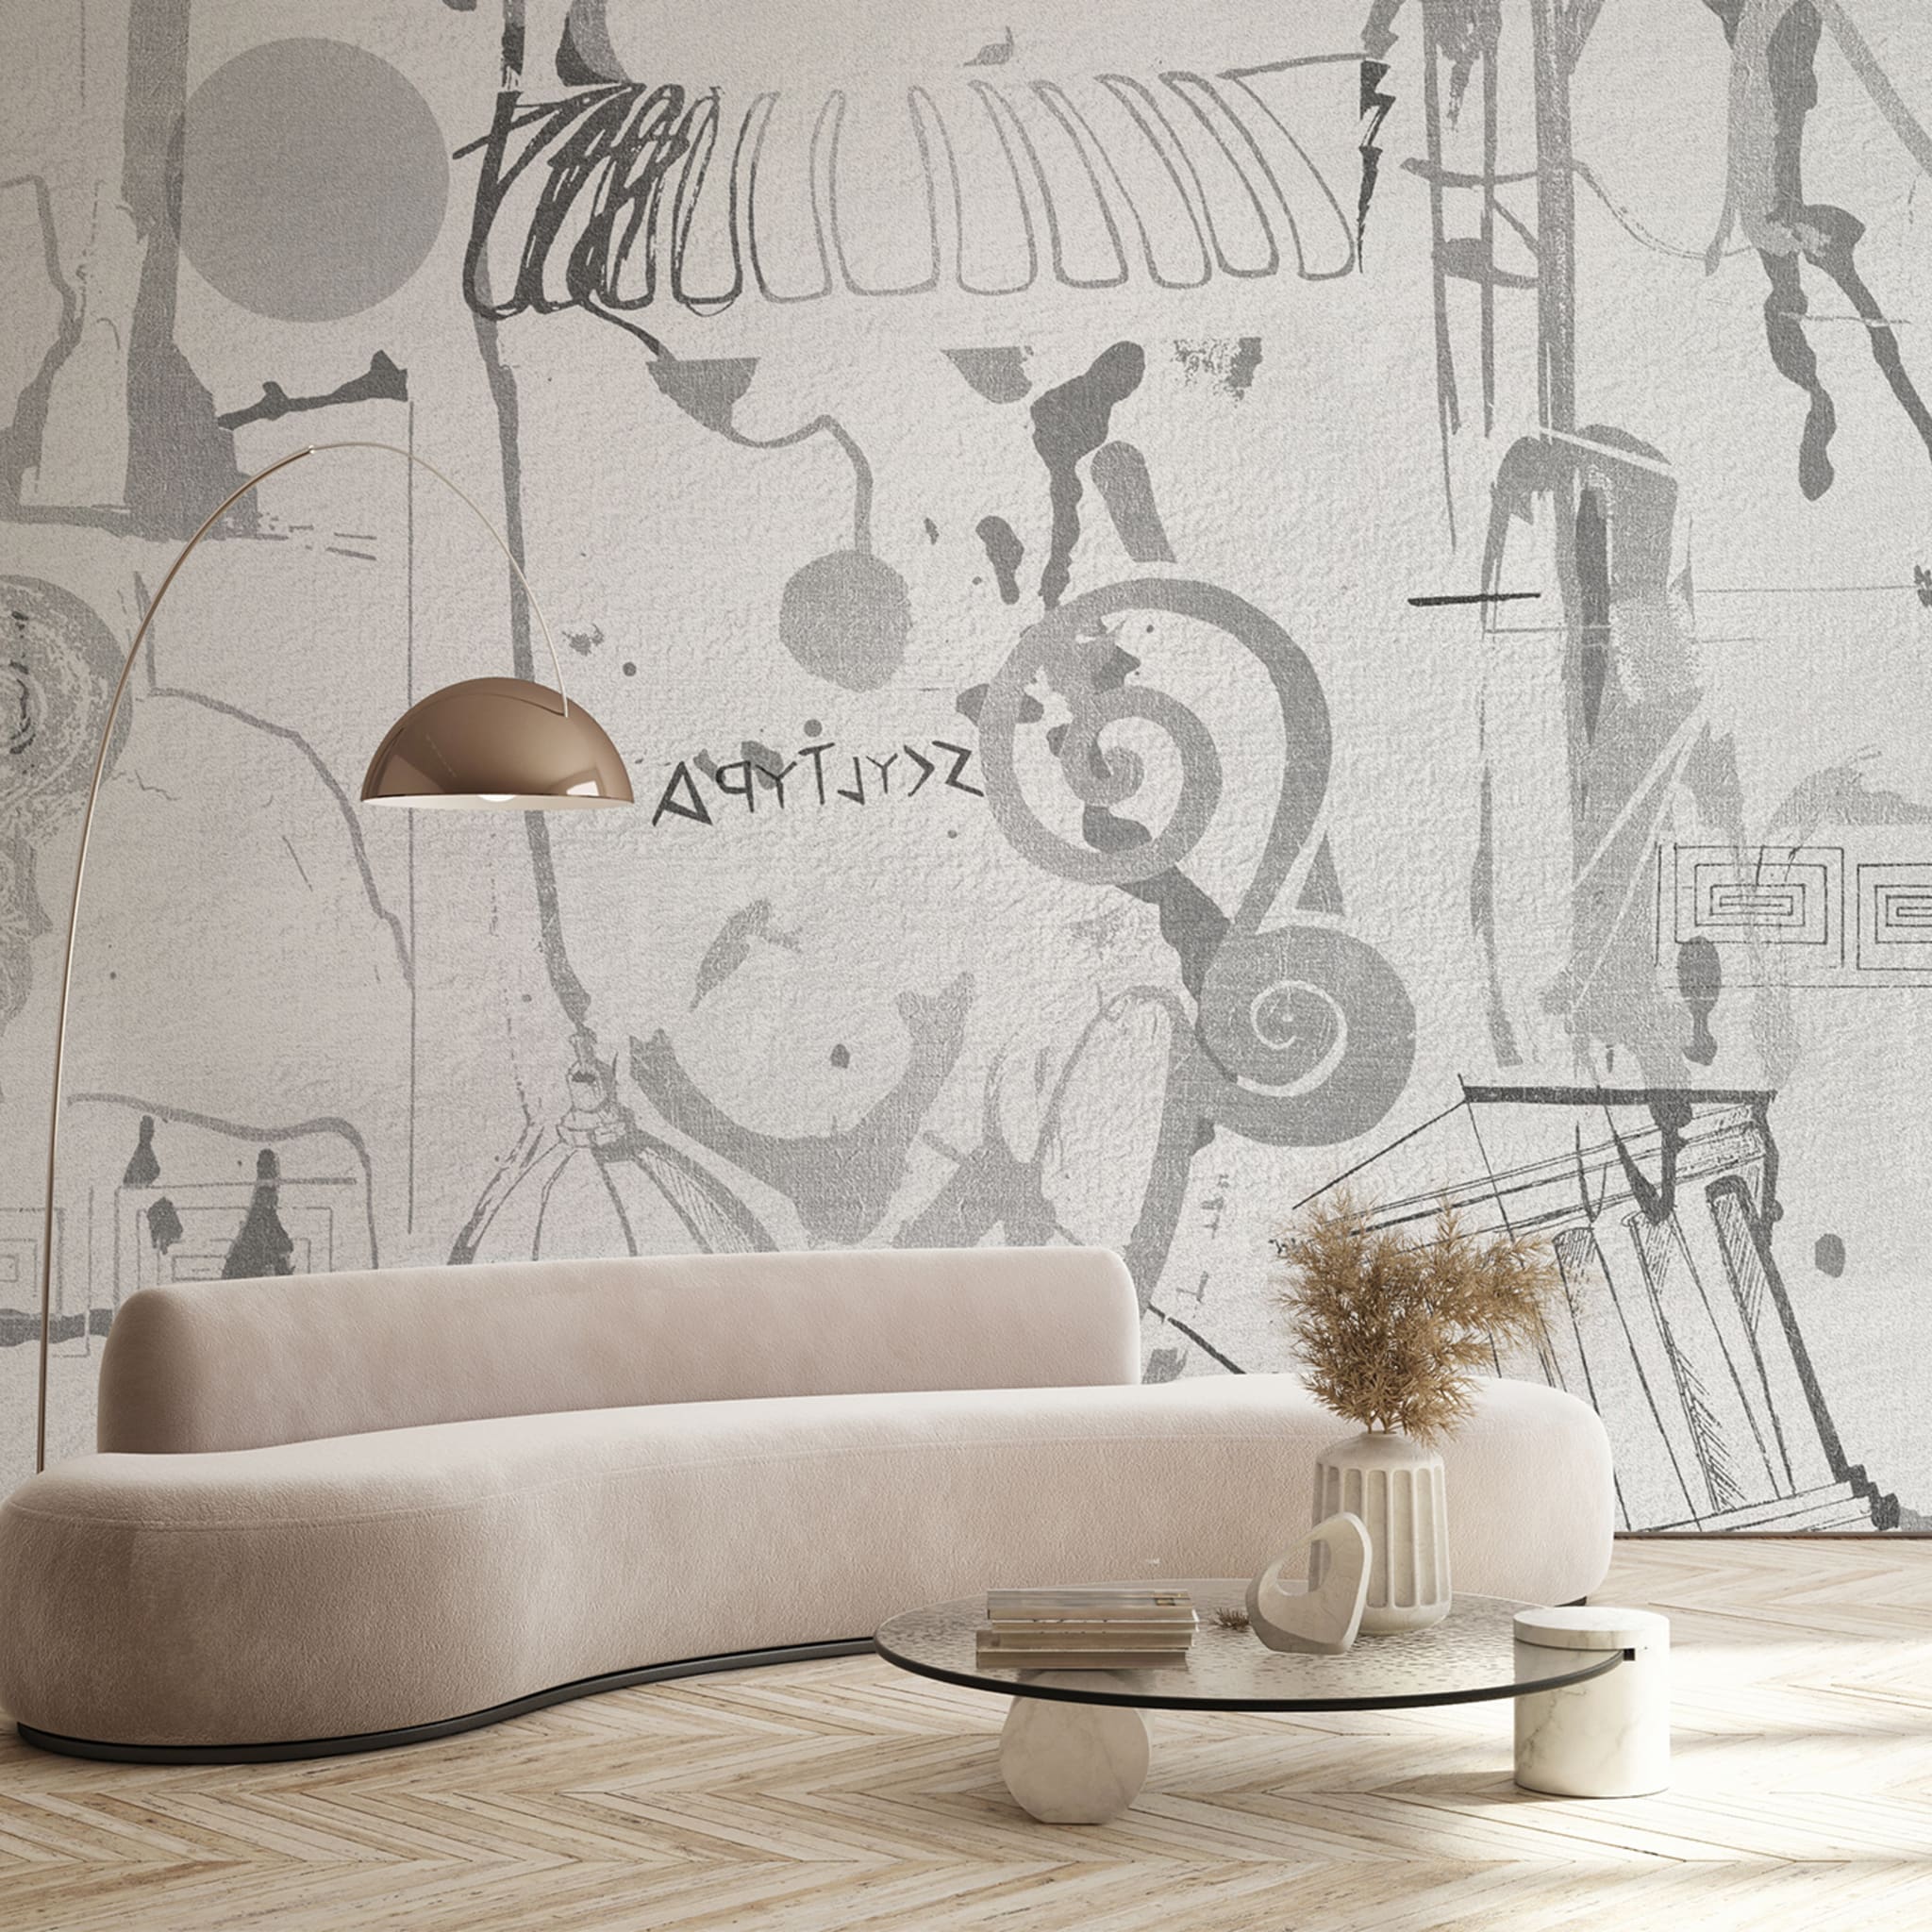 B&W greek decoration textured wallpaper  - Alternative view 1